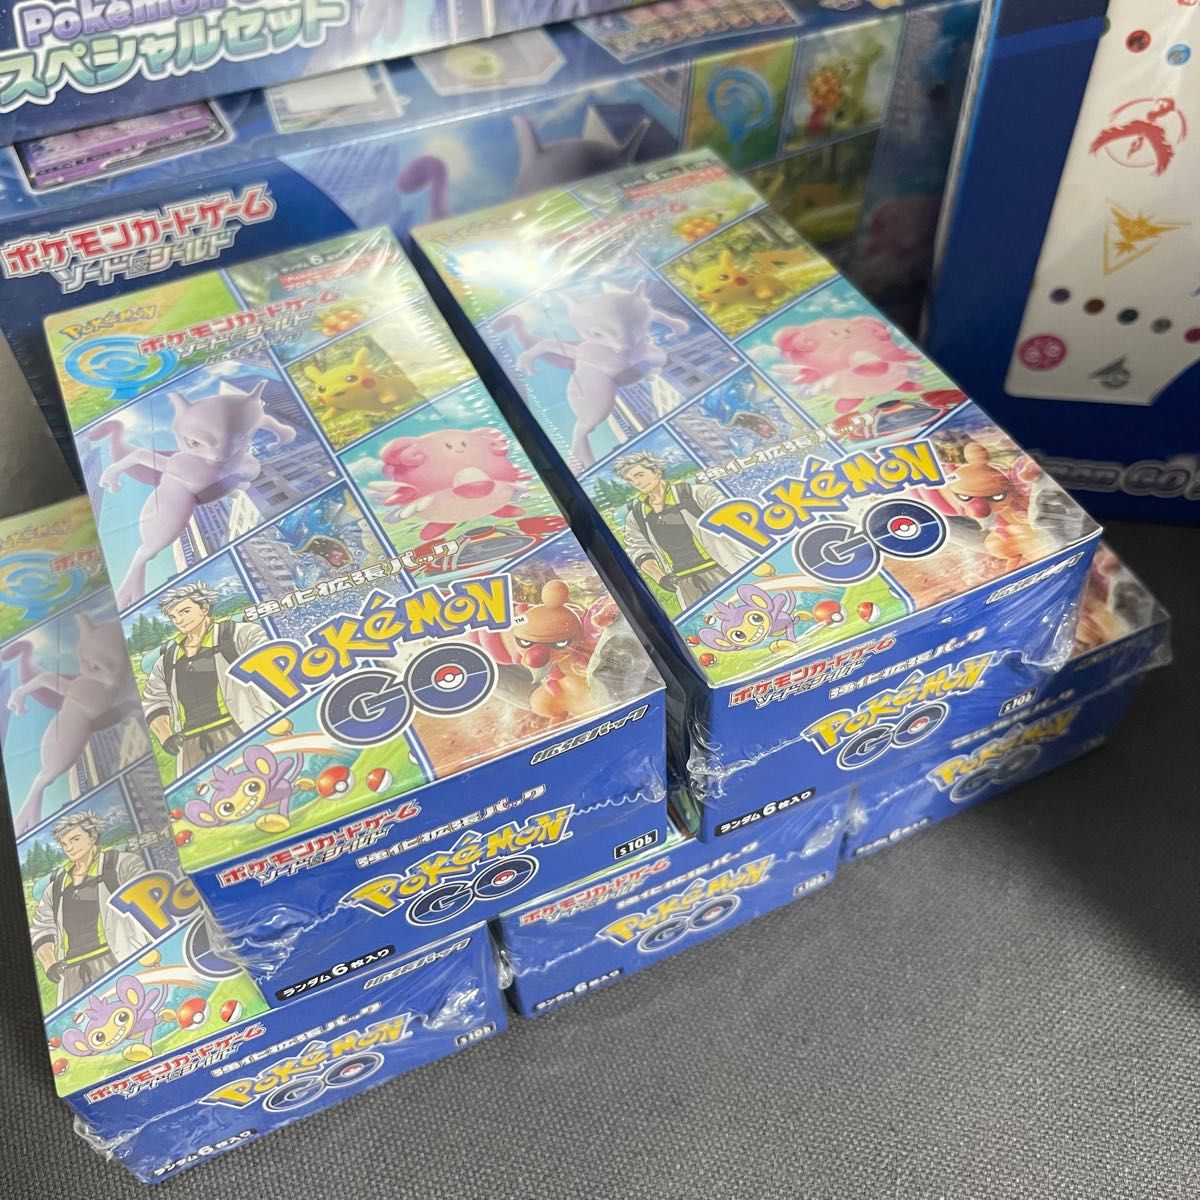 ポケモンカード ポケモンGO BOX スペシャルセット カードファイルセット